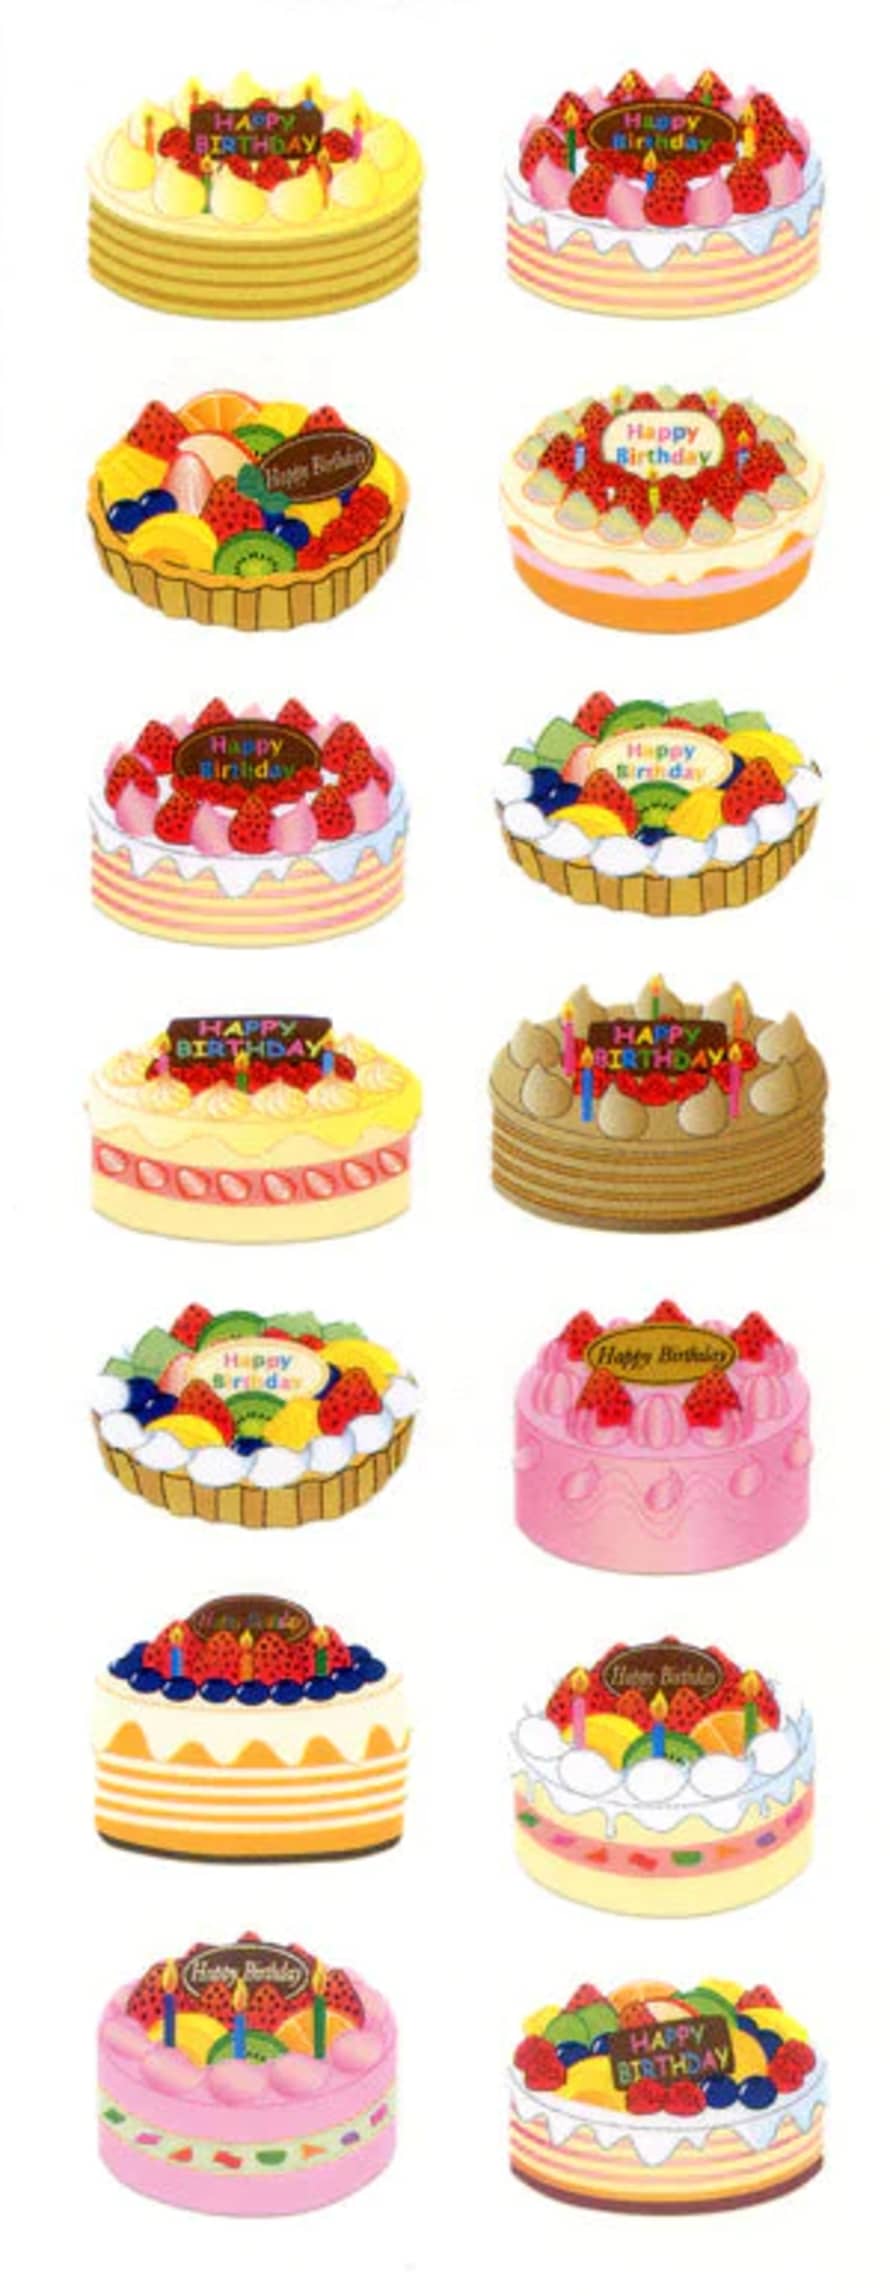 www.Japan-Best.net Zc088 Paper Birthday Cakes Stickers